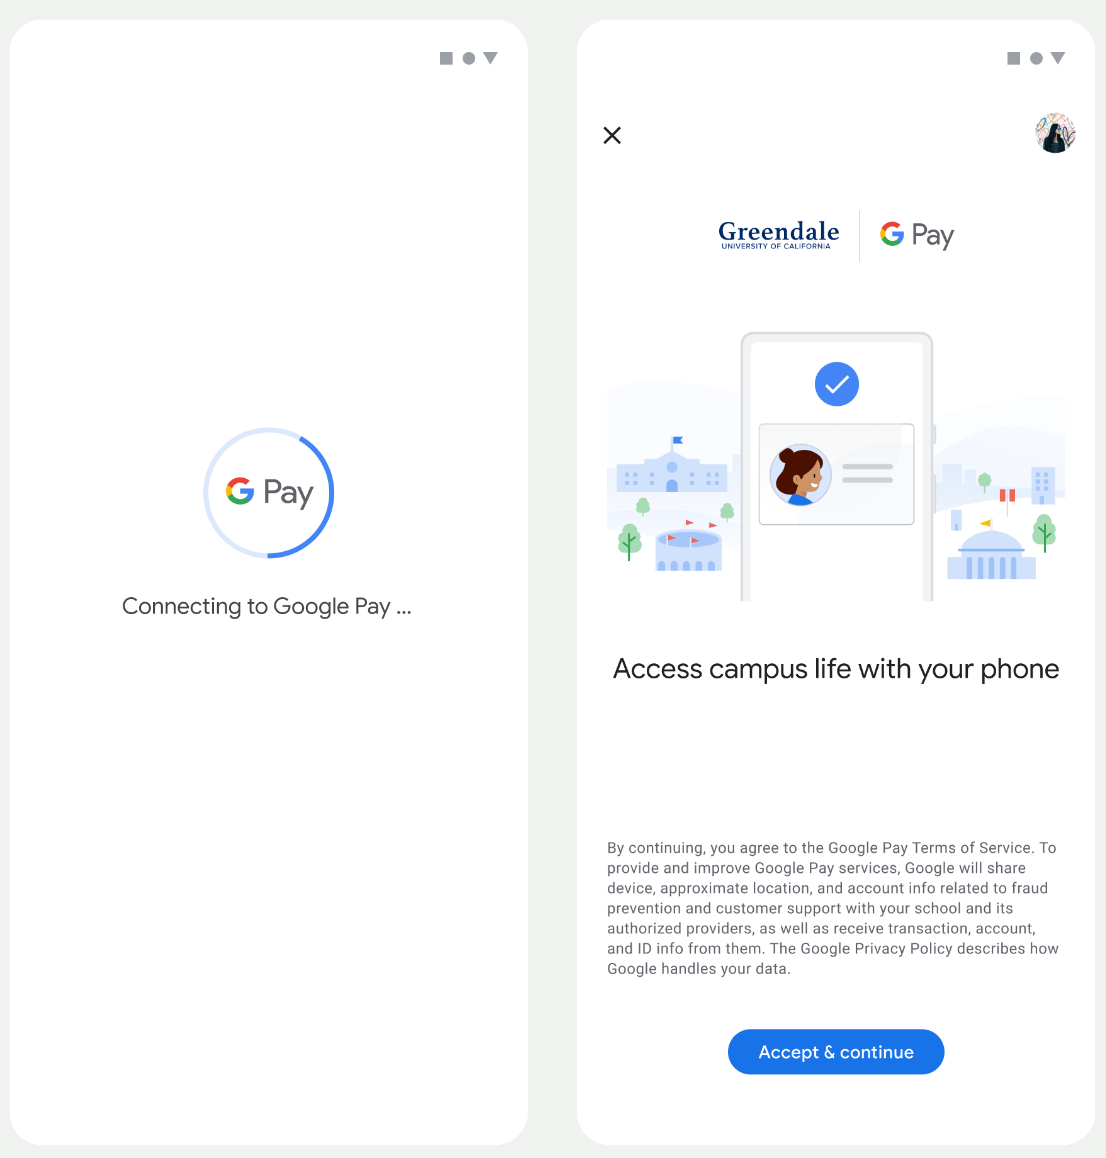 पहली स्क्रीन में, ऐप्लिकेशन Google Wallet से कनेक्ट होता है. दूसरी स्क्रीन में, उपयोगकर्ता सेवा की शर्तें स्वीकार करता है और जवाब देना जारी रखता है.